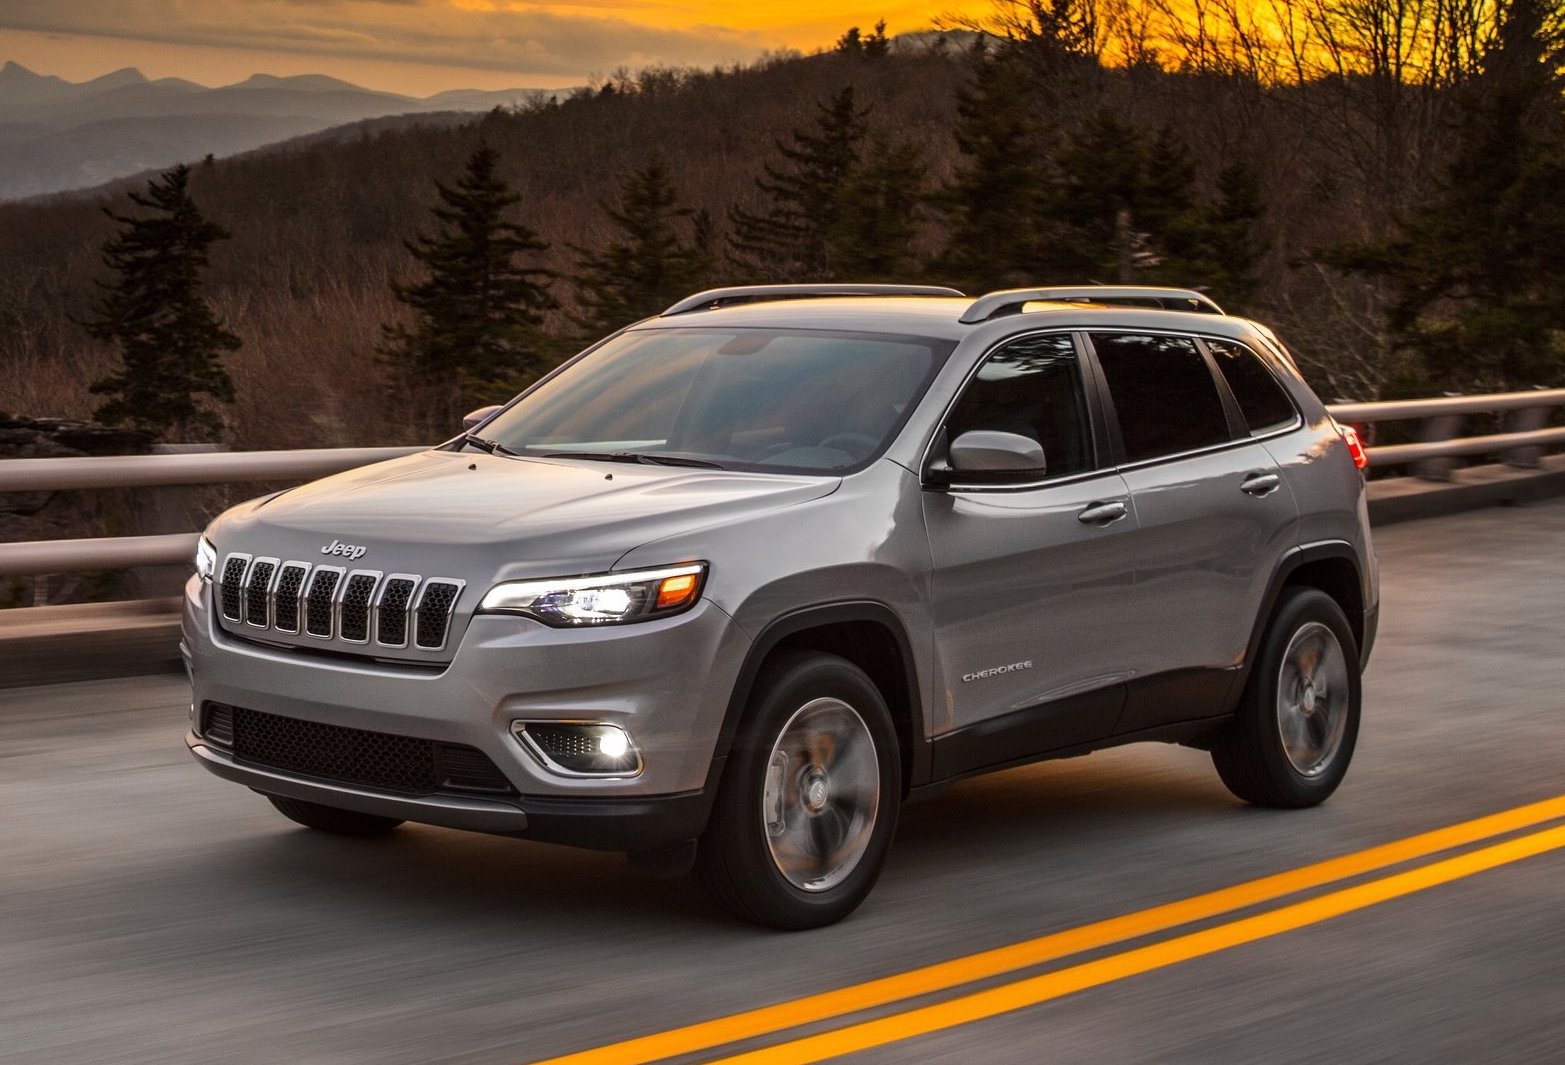 2019 Jeep Cherokee revealed ahead Detroit debut